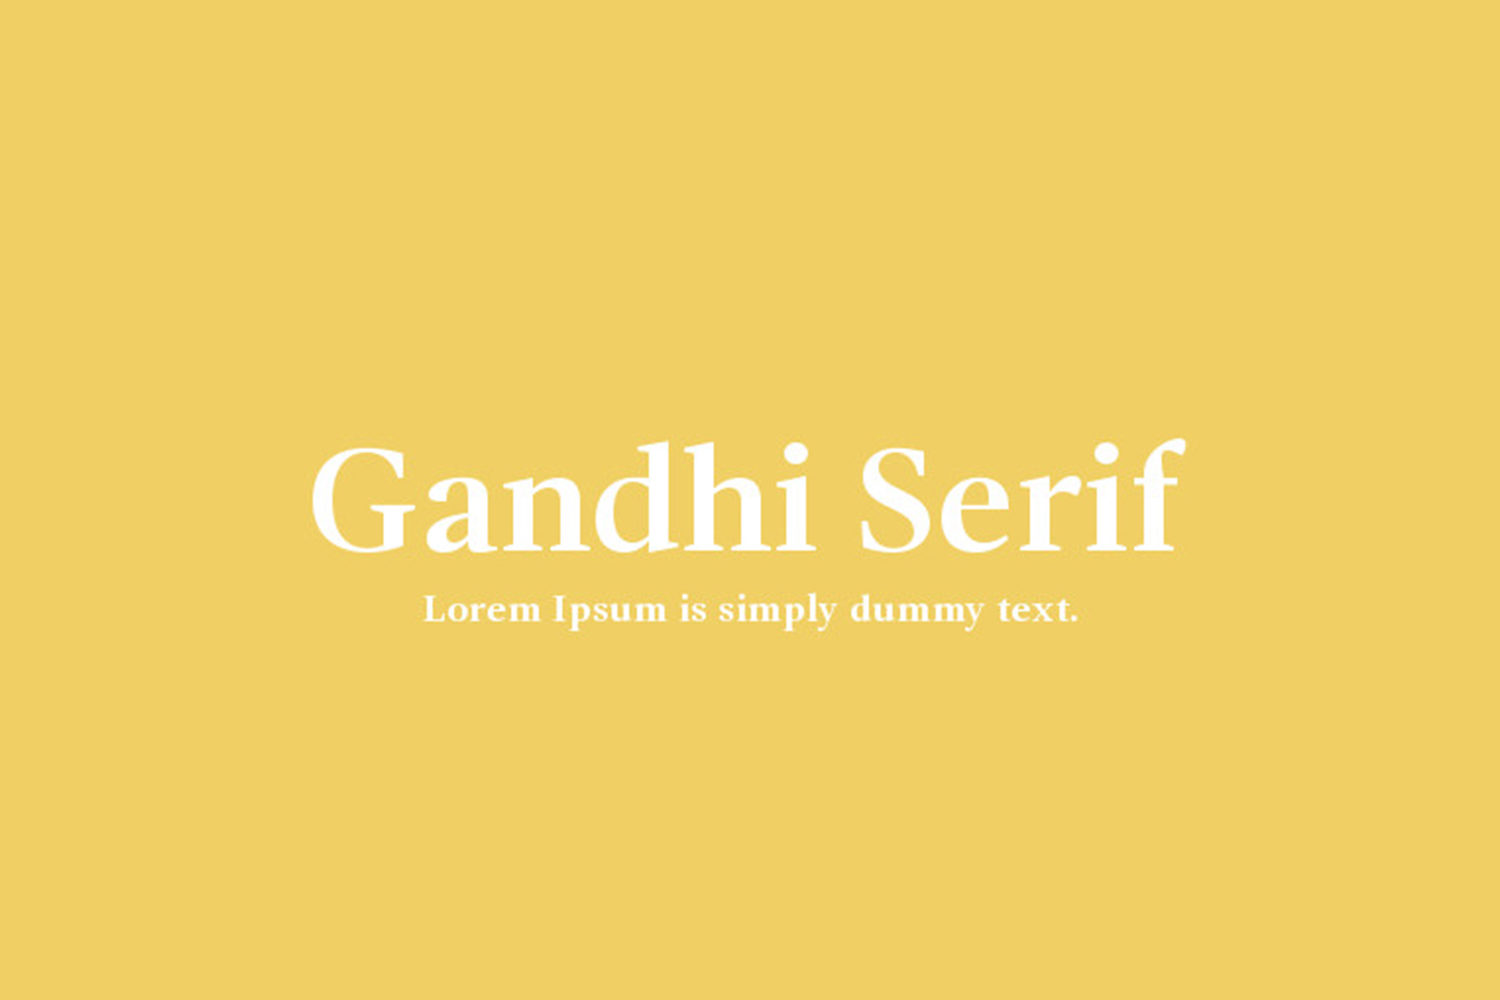 Gandhi Serif Free Font Family